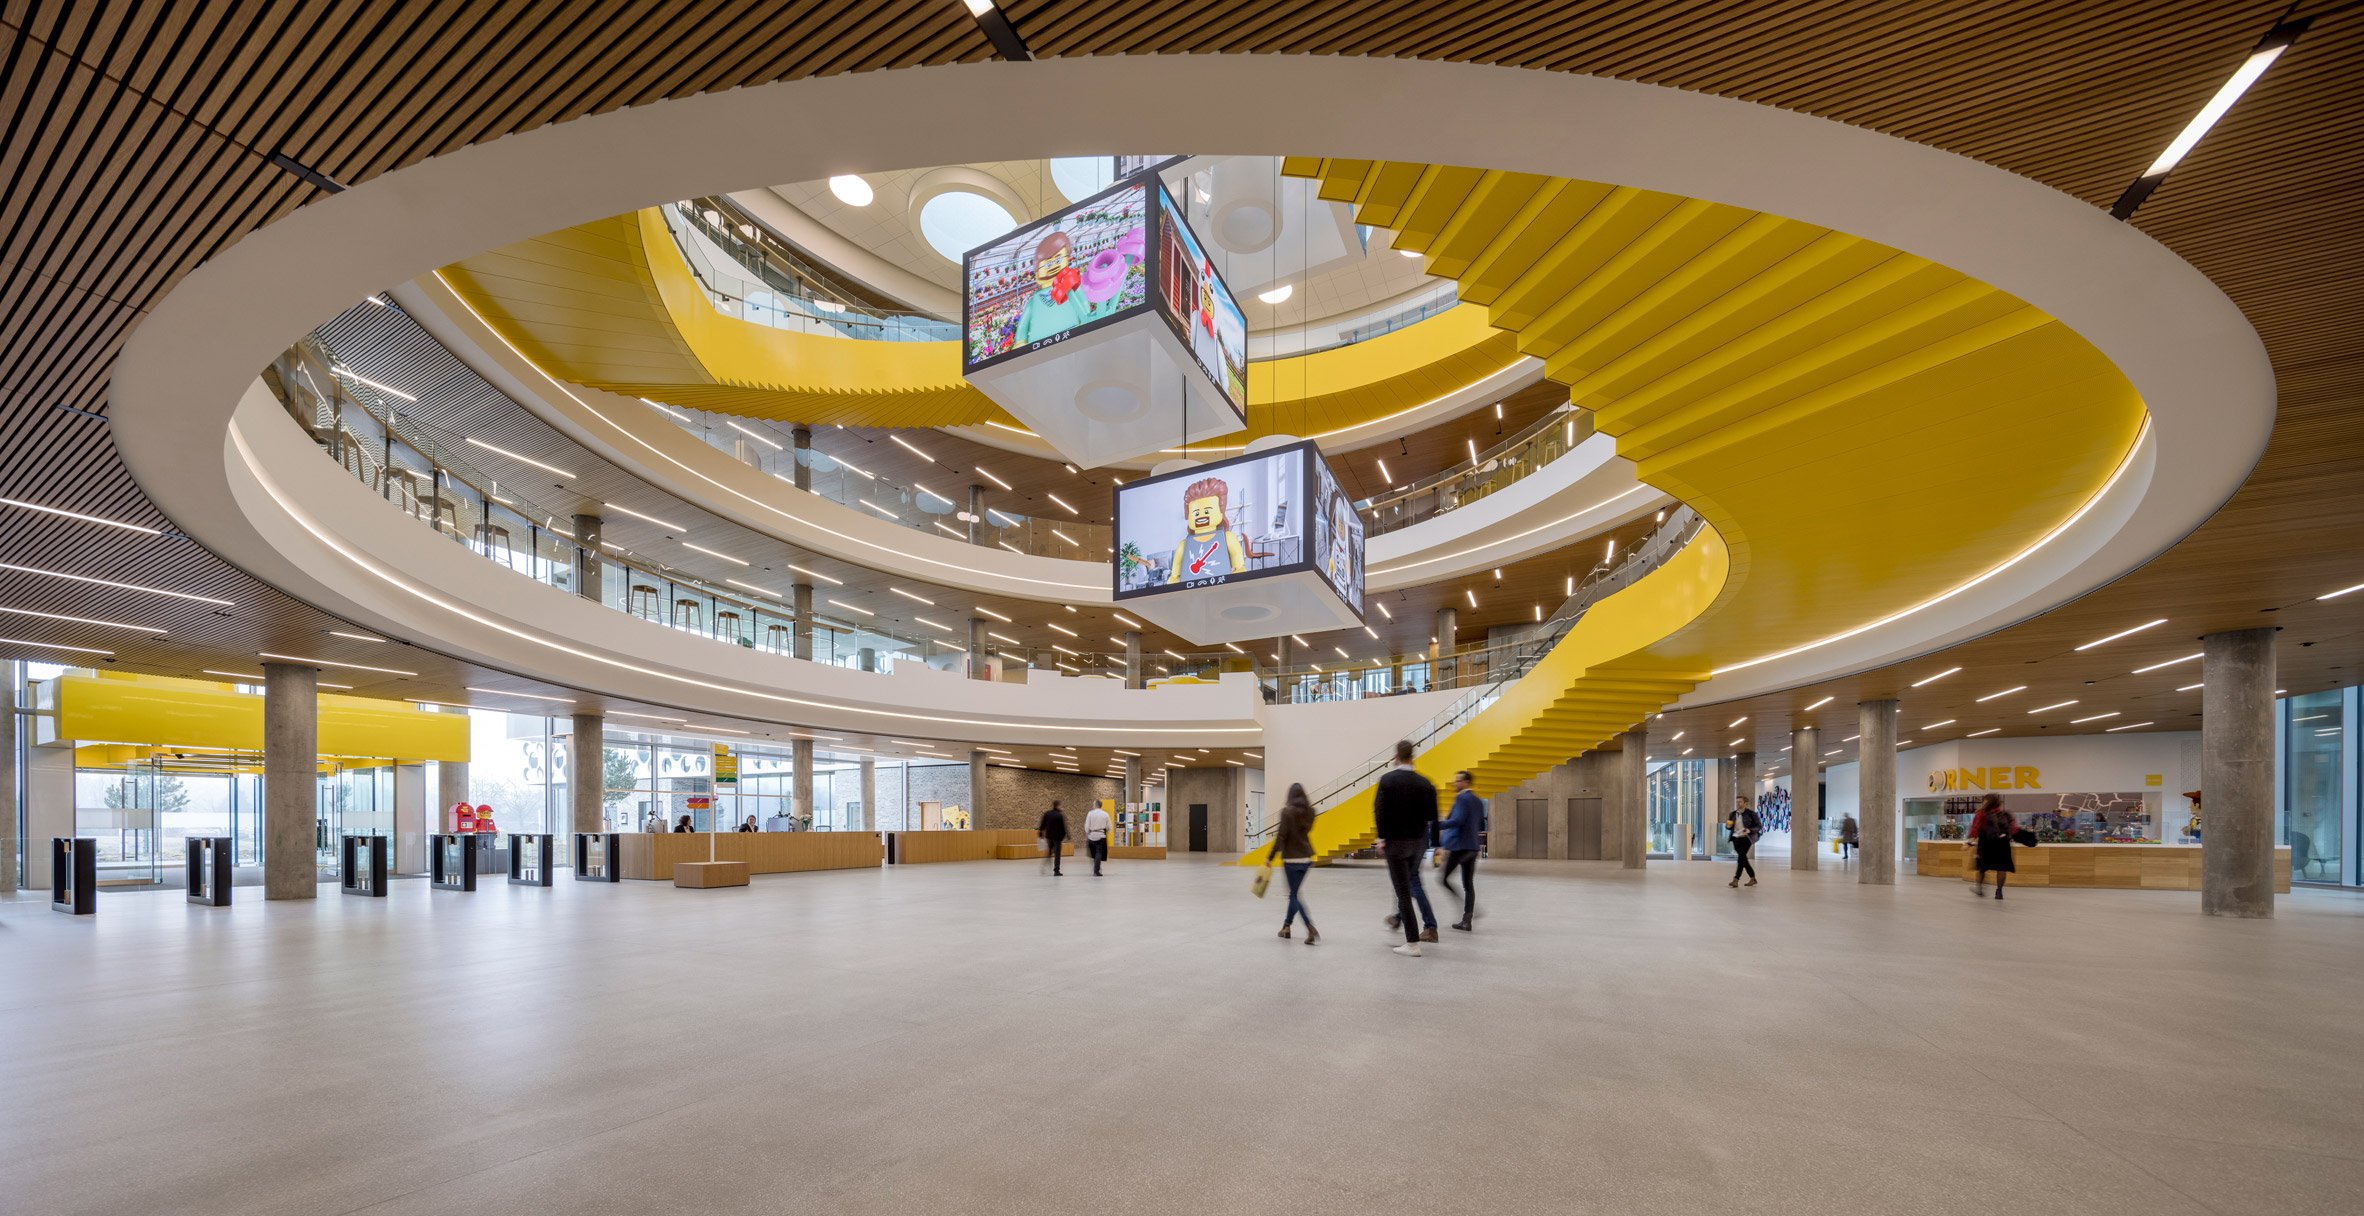 CF Møller Architects arranges Lego campus around circular atrium